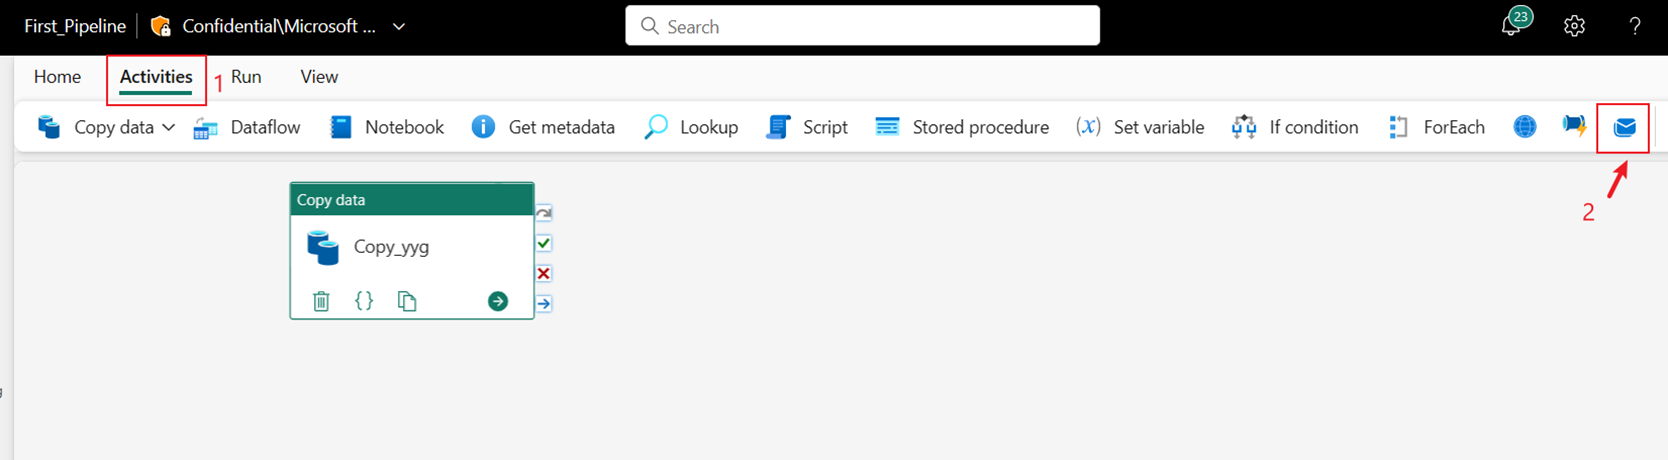 Captura de pantalla que muestra la selección de la actividad de Office 365 Outlook en la barra de herramientas Actividades del menú del editor de canalizaciones.